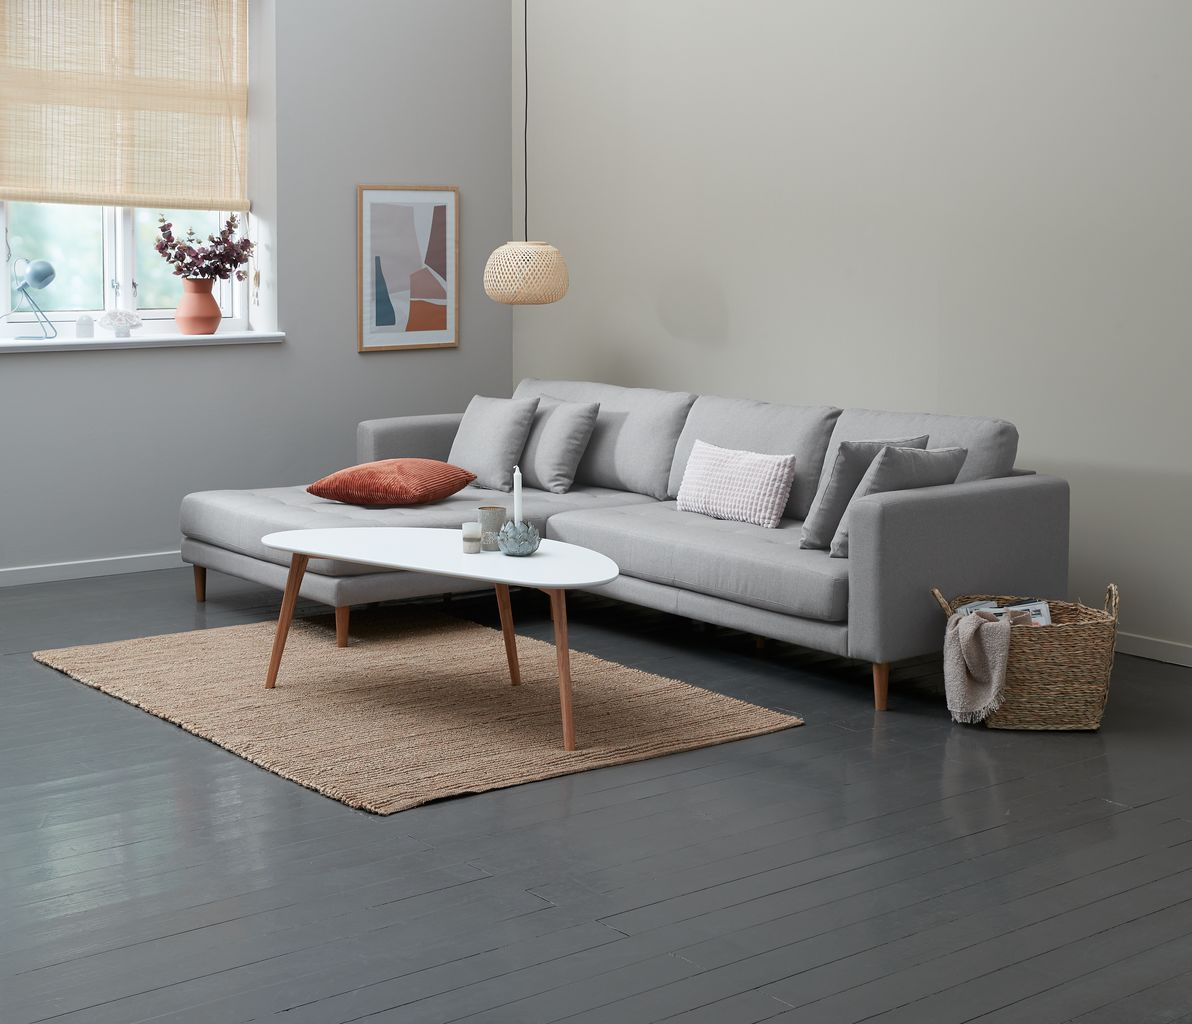 Bộ bàn ghế sofa với tone màu xám đơn giản cho căn phòng khách nhà ống hiện đại (Nguồn: jysk)